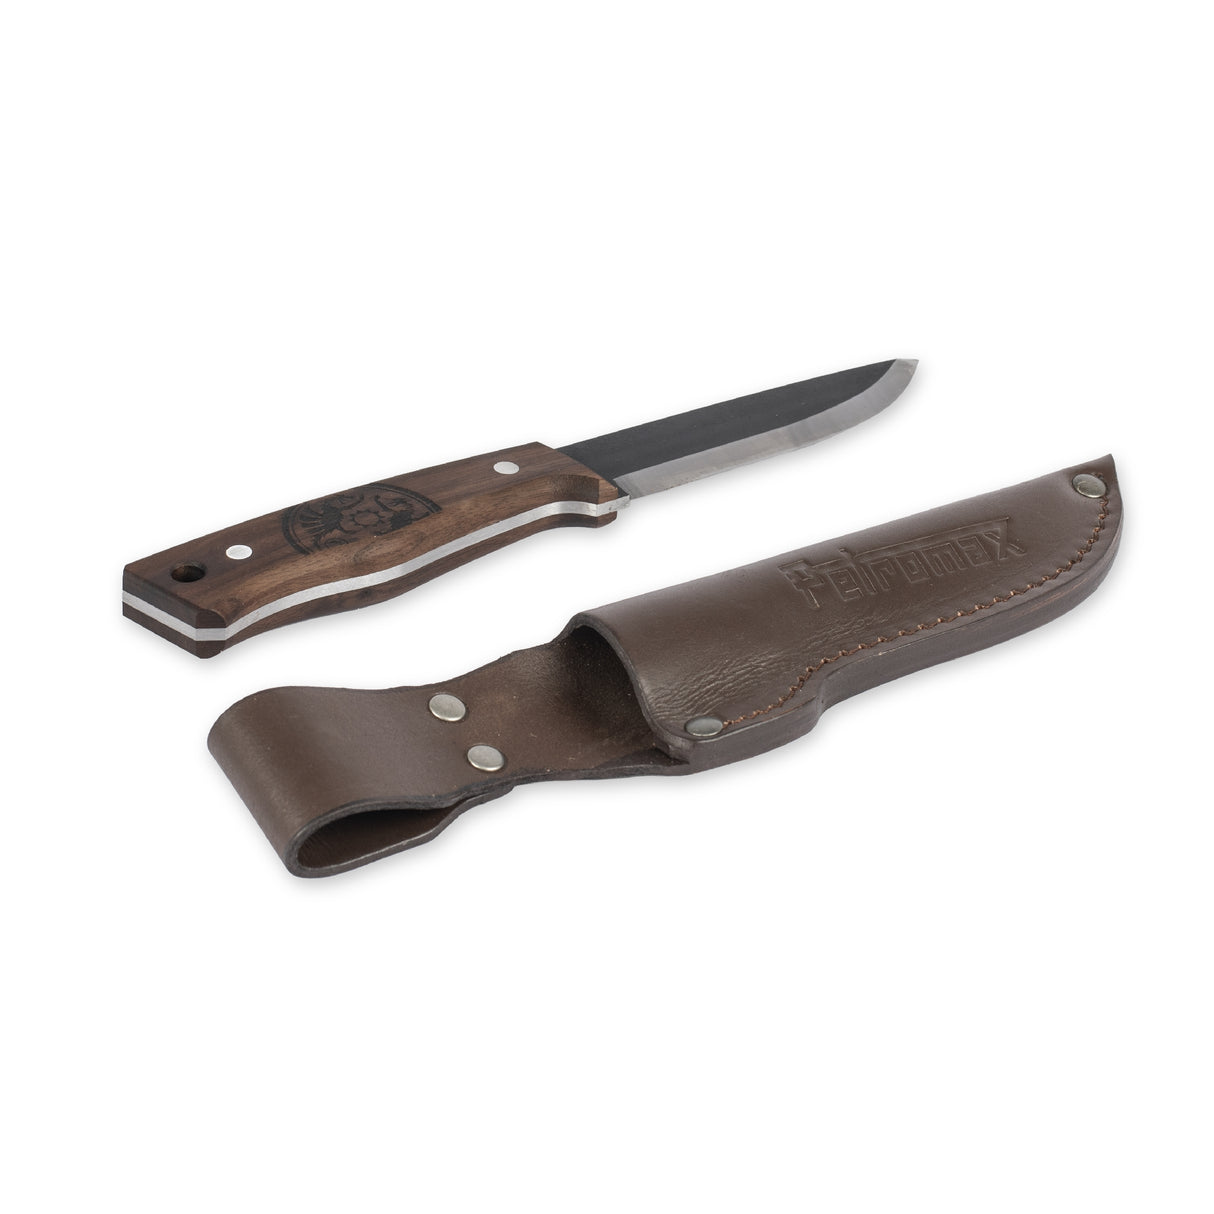 Bushcraft knife 10.5 cm